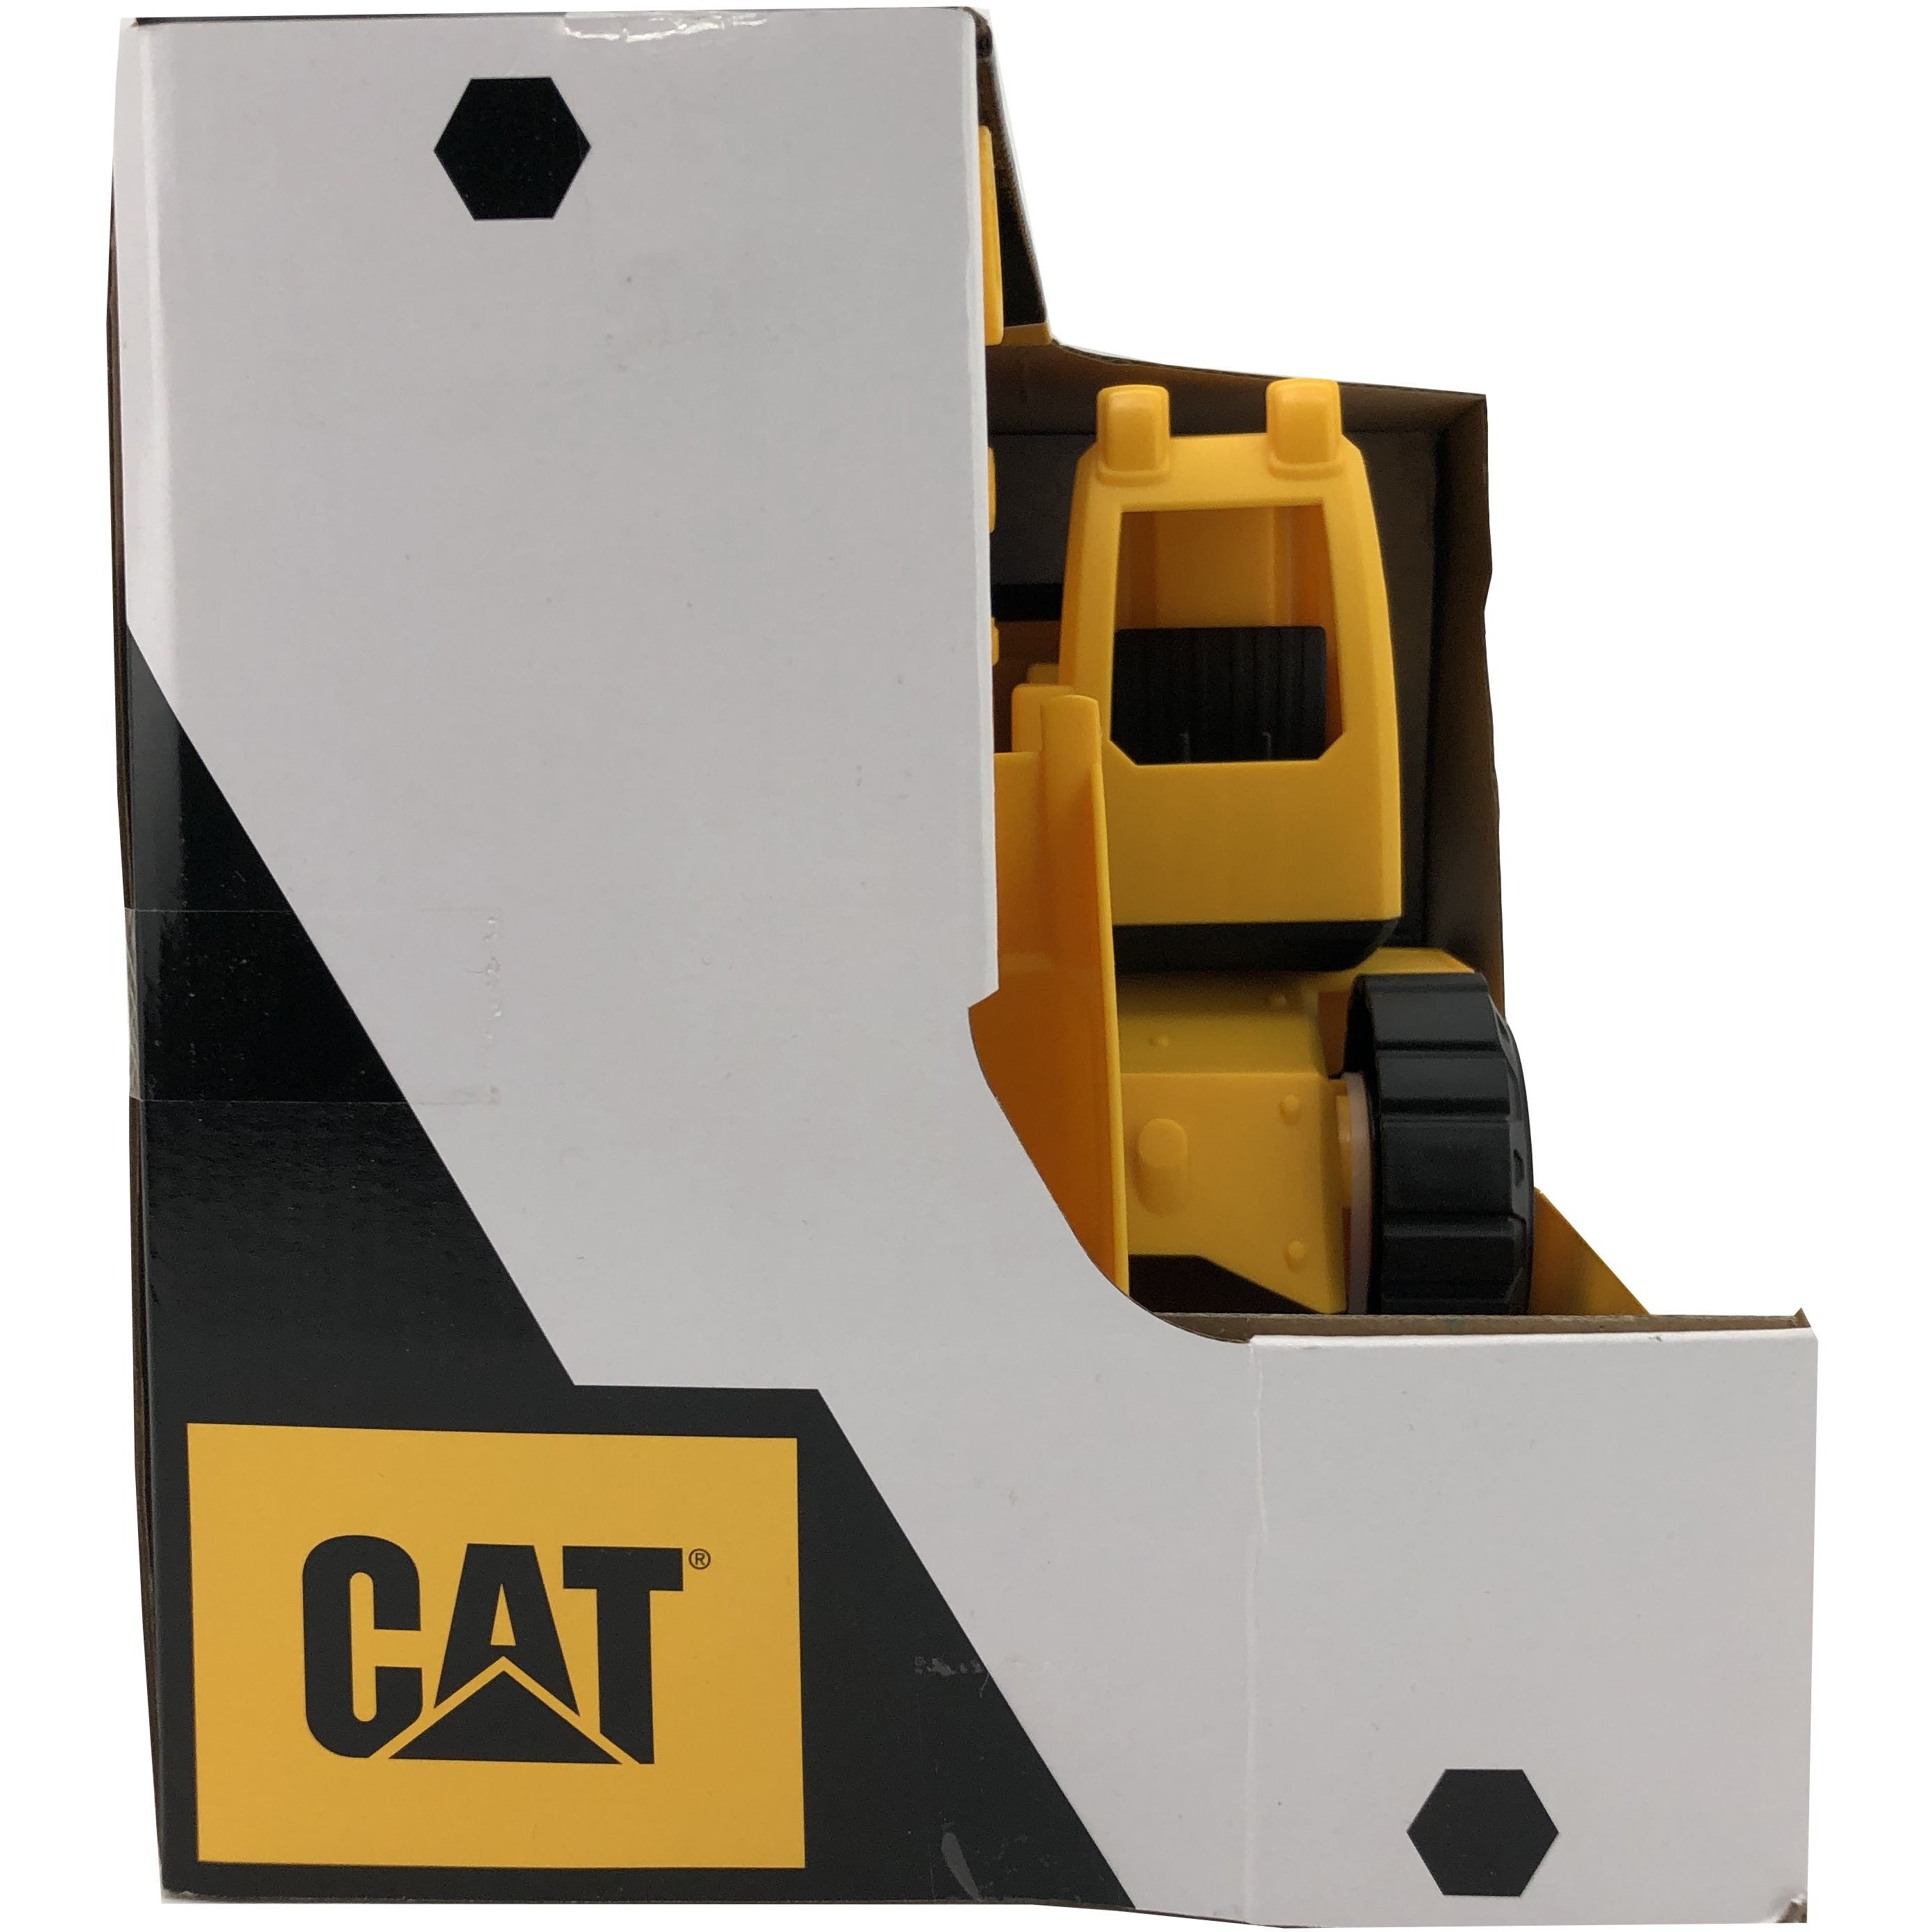 CAT Toy Tough Rigs Excavator / 15" Excavator Toy / Oversized / Yellow